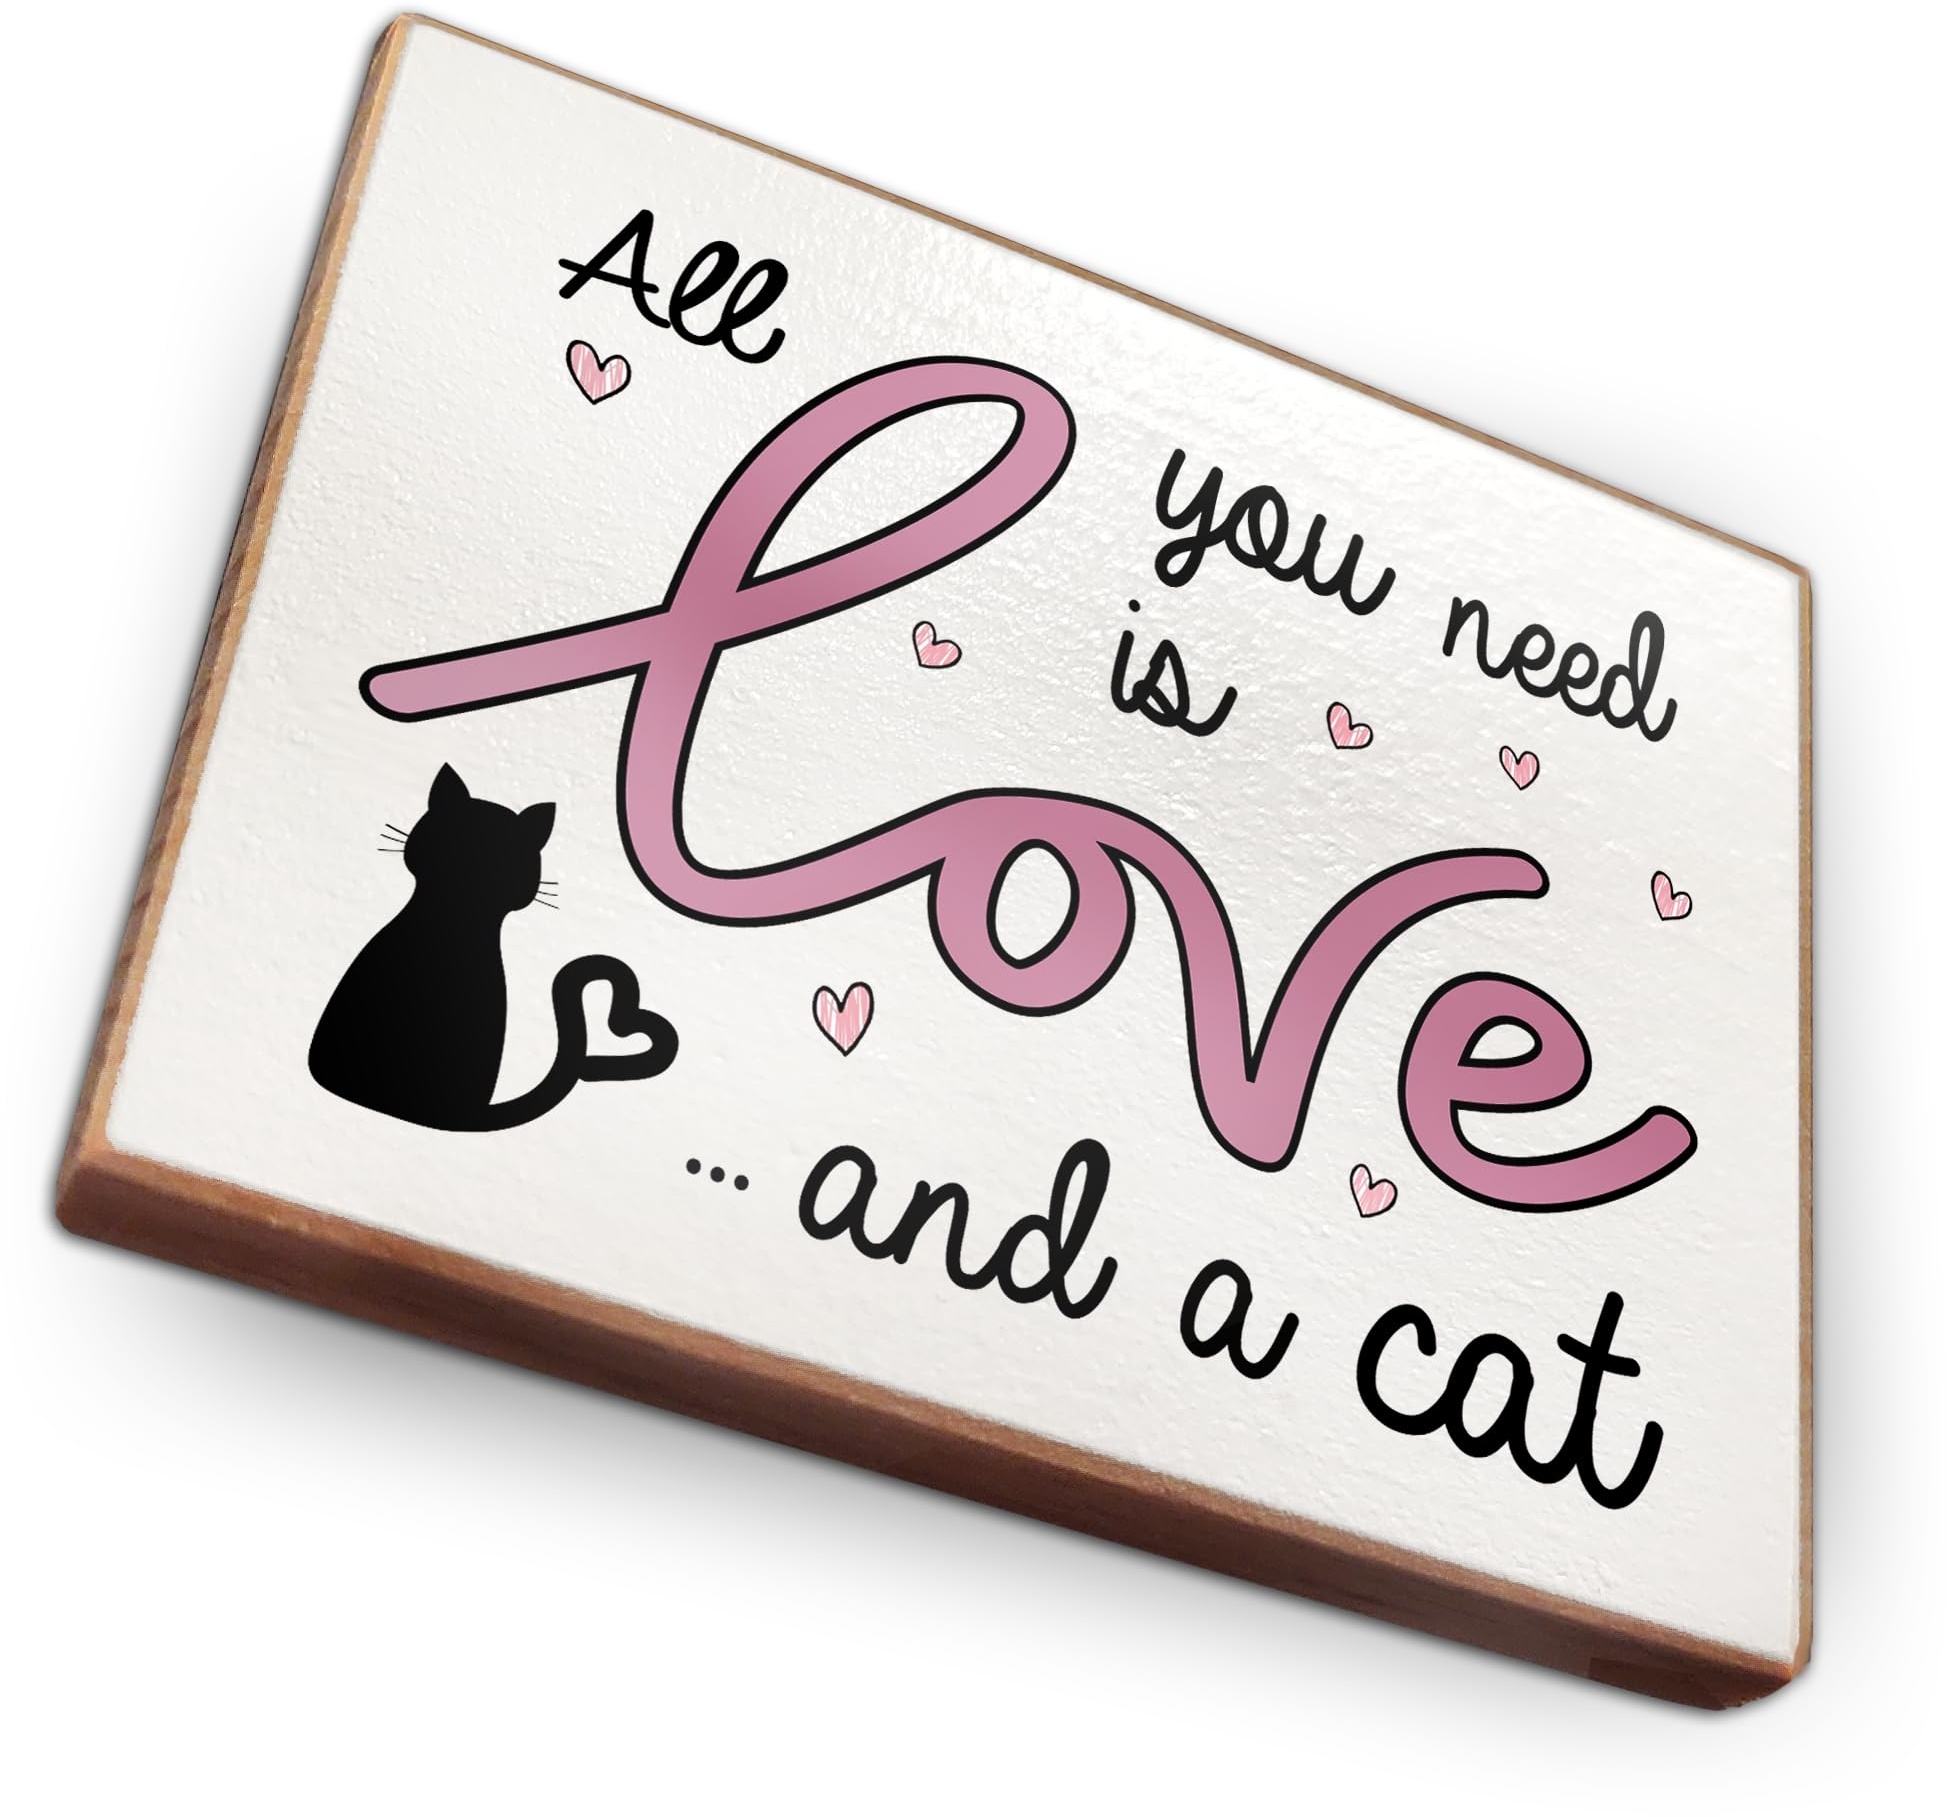 Kühlschrankmagnet mit Spruch | Handmade aus Buchenholz als tolle Geschenkidee | (All You Need is Love and a cat)